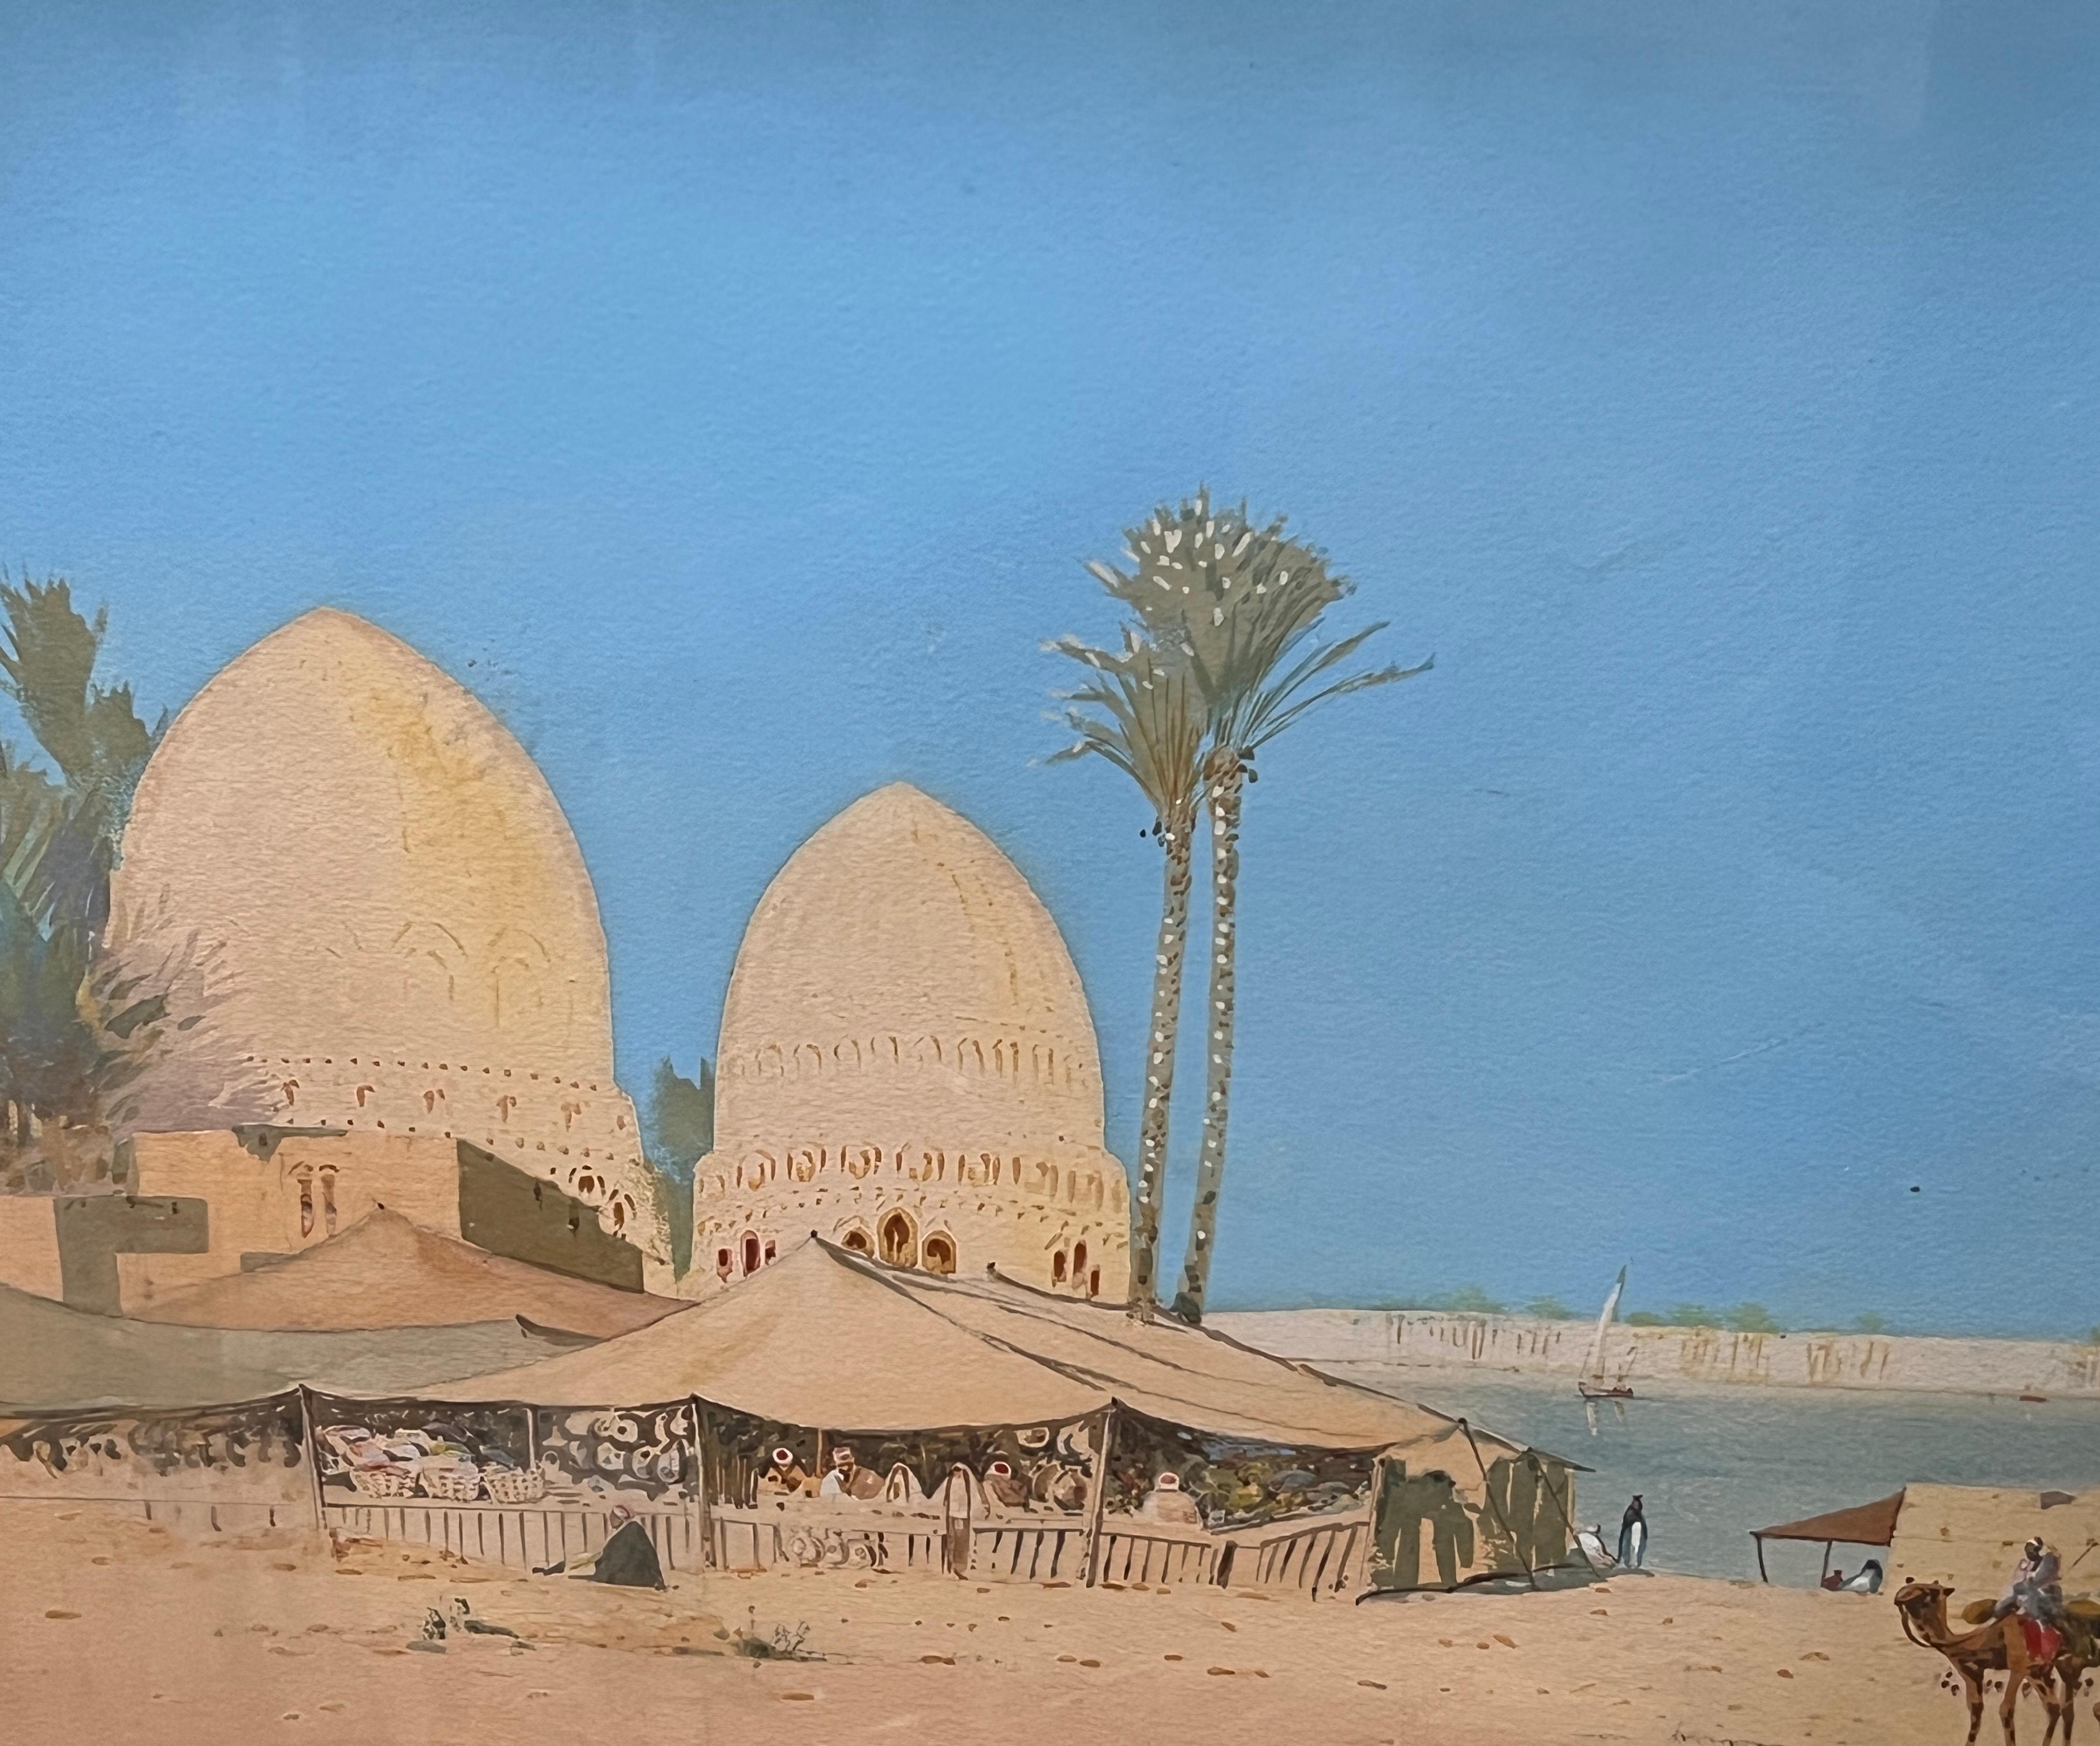 Das orientalische Gemälde von Lamplough zeigt einen Zeltmarkt, der sich direkt am grünen Wasser des Nils befindet. Kamele mit Händlern stehen im Vordergrund des Bildes in der Nähe eines schattigen Baldachins, der an zwei Palmen befestigt ist. In der